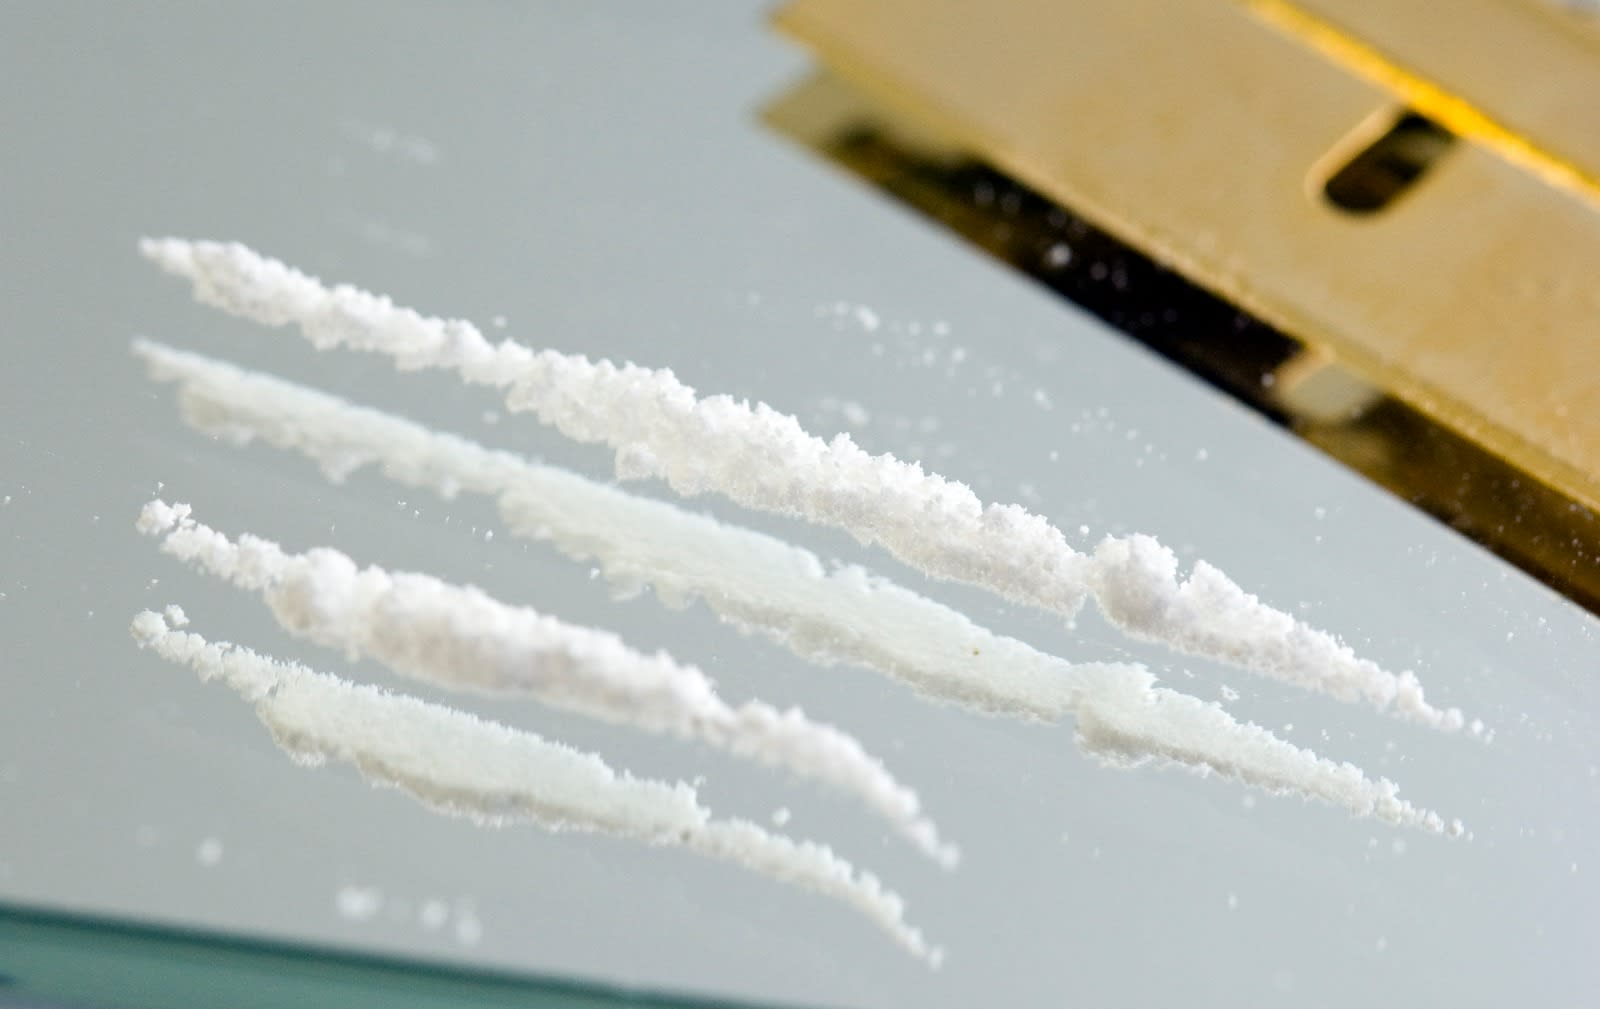 Bijna 500 kilo cocaïne ontdekt in bedrijfspand, man aangehouden